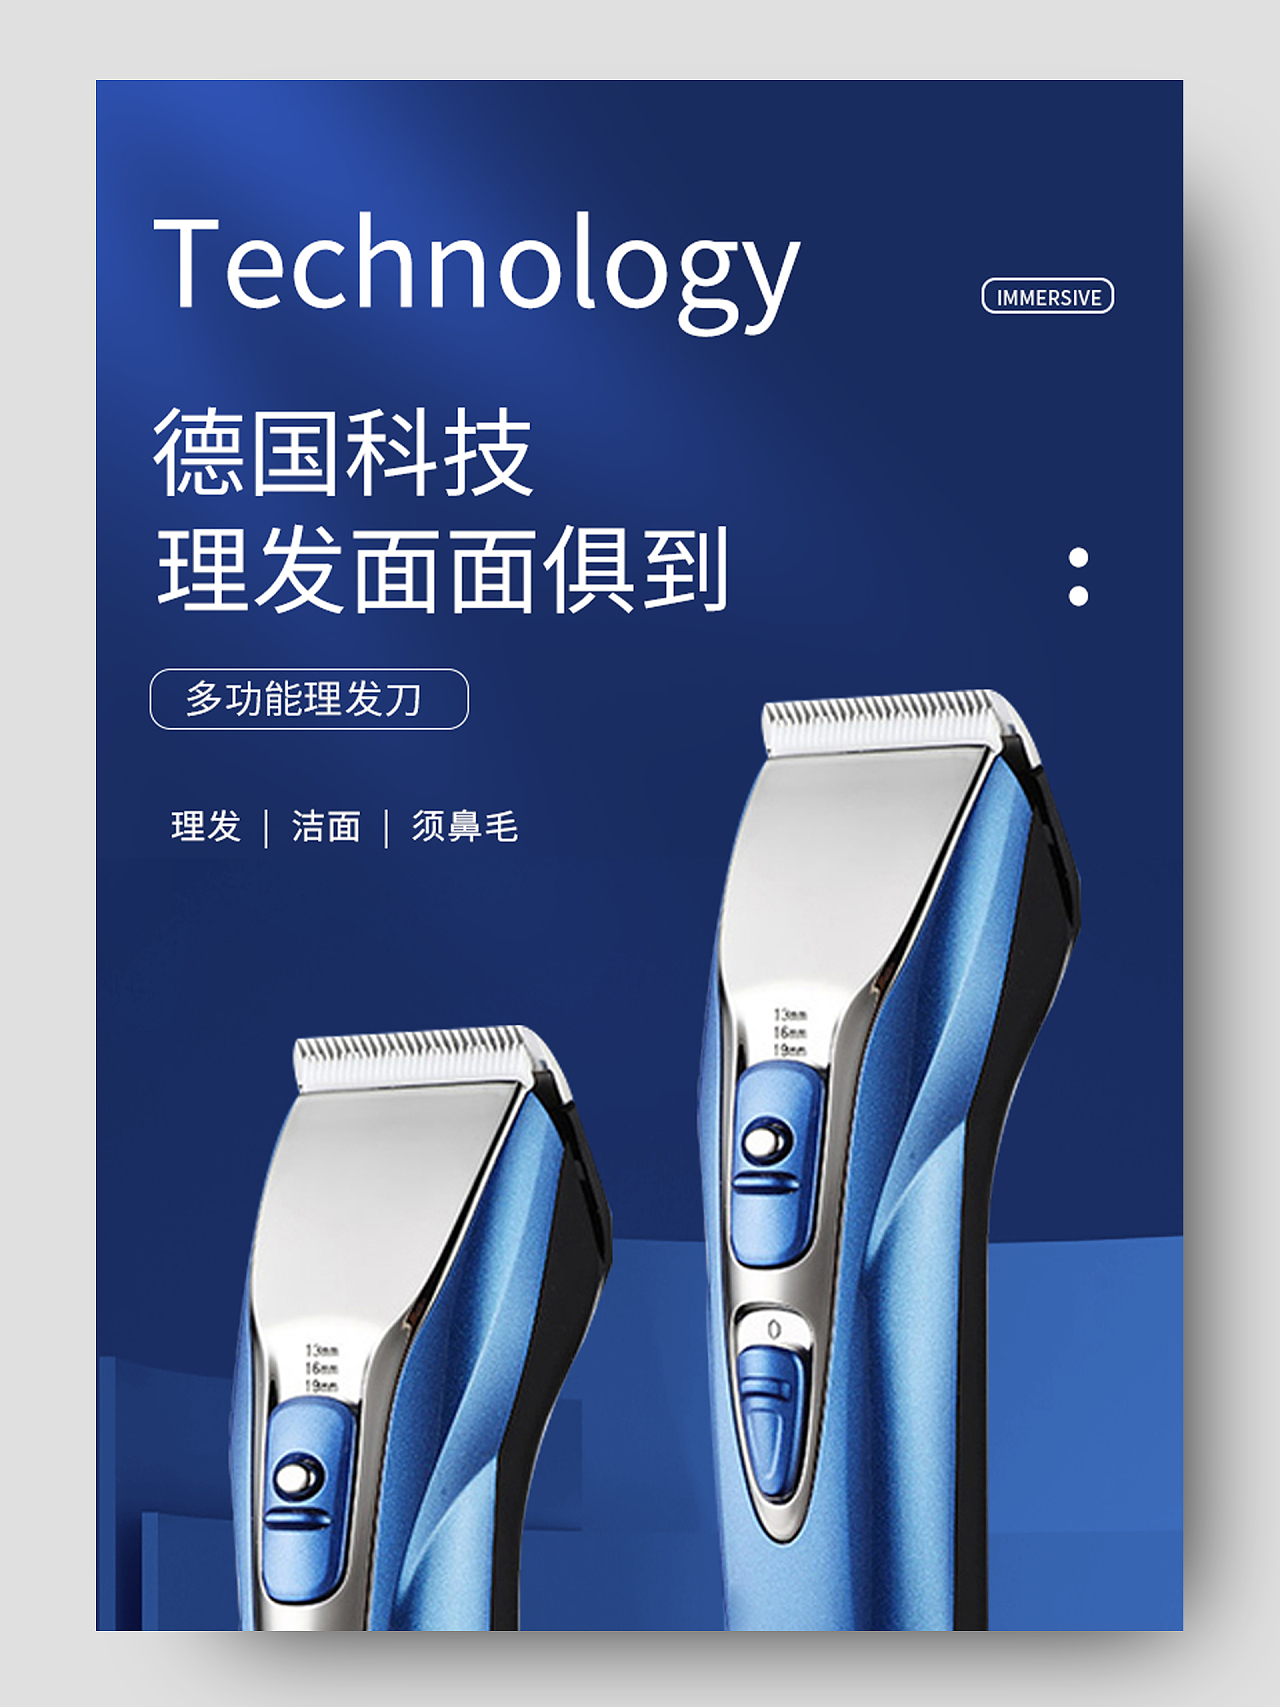 蓝色详情页德国科技理发面面俱到多功能理发刀理发器详情页